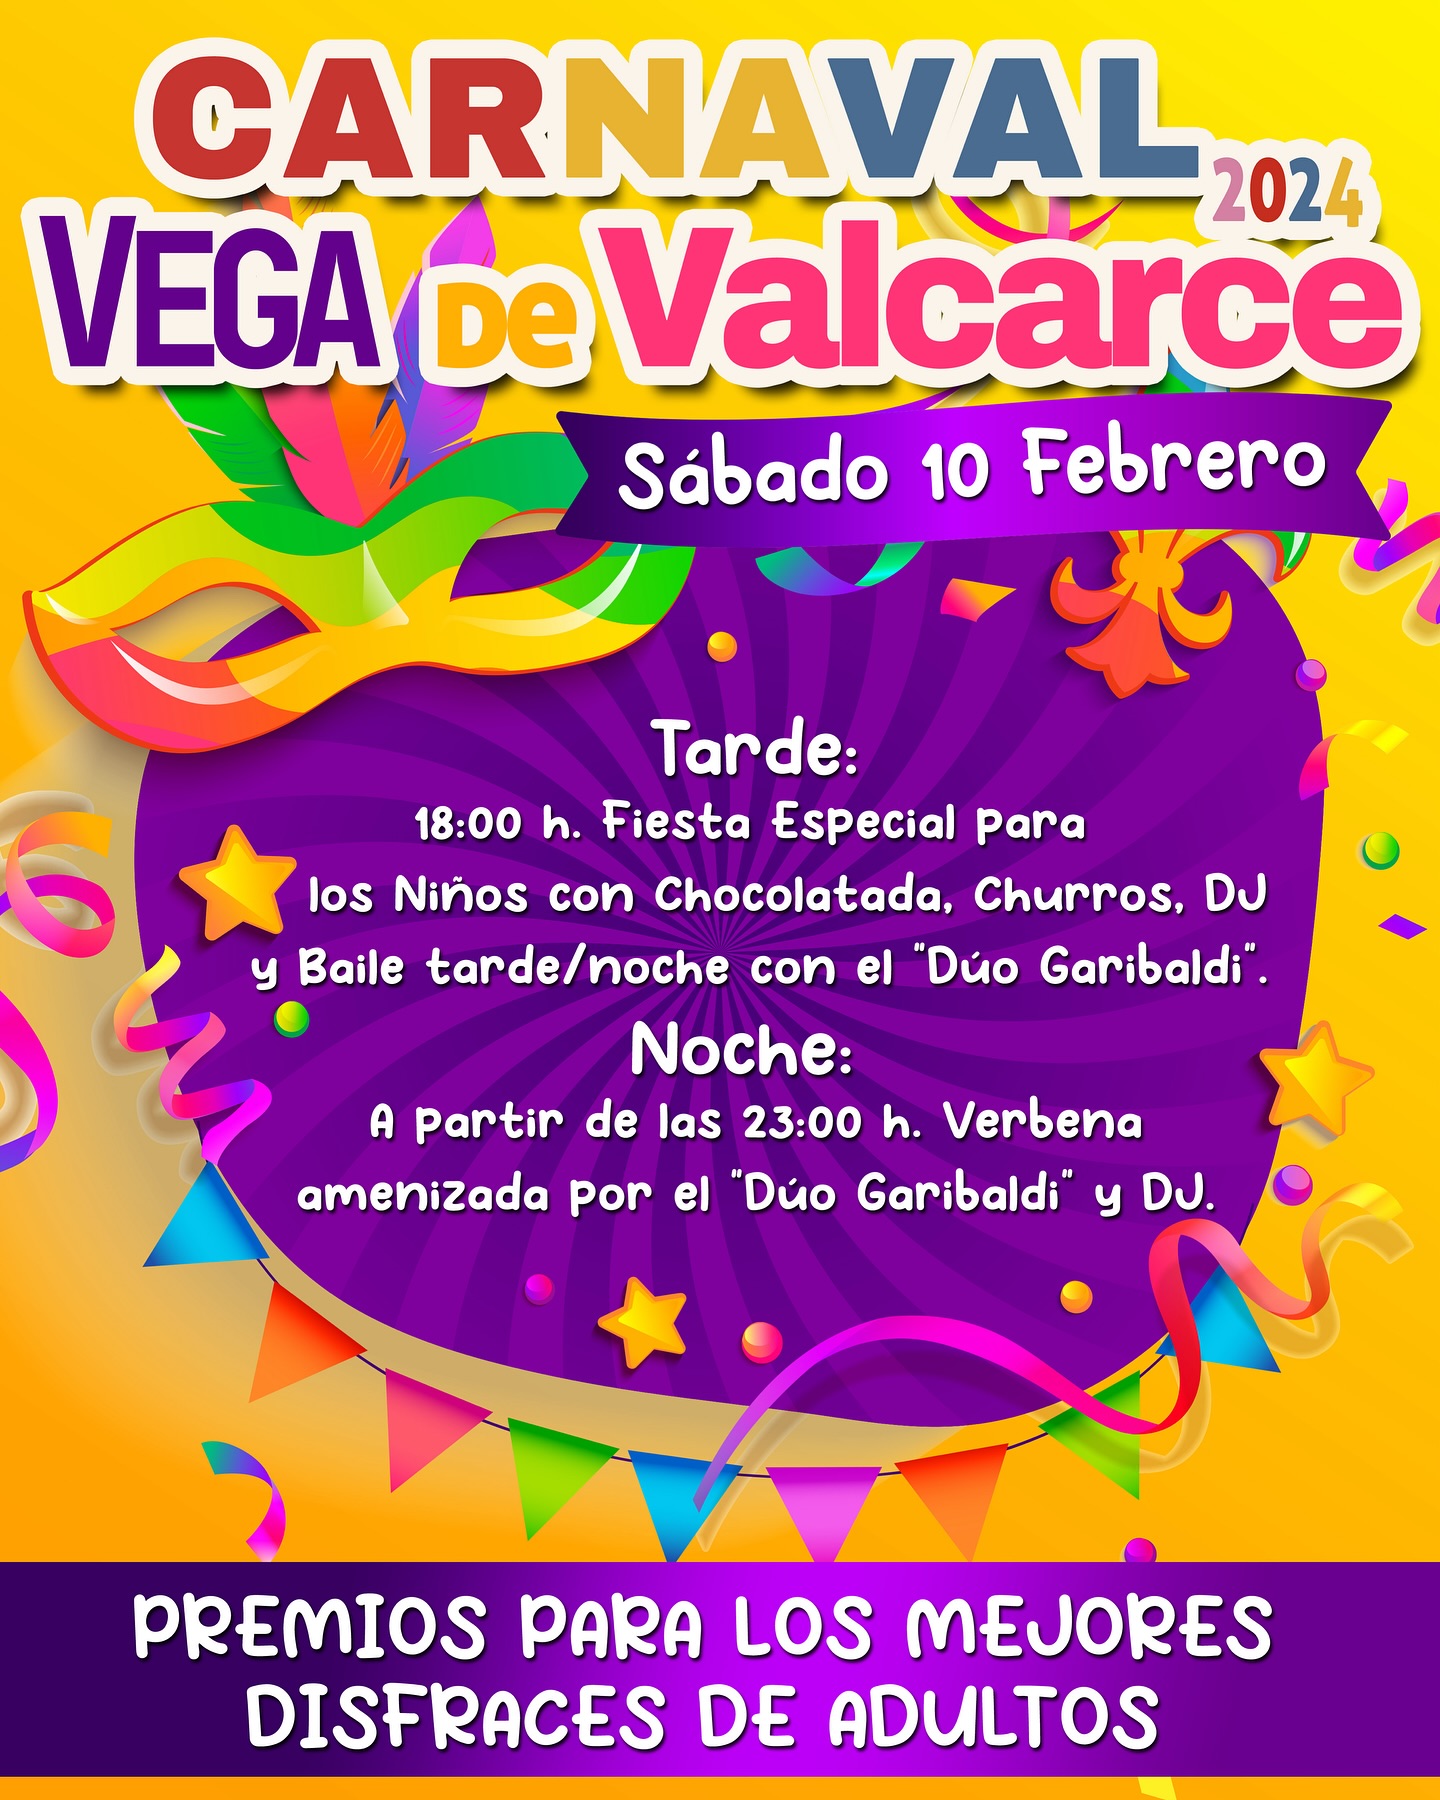 Vega de Valcarce organiza su fiesta de Carnaval 2024 el sábado 10 de febrero 2